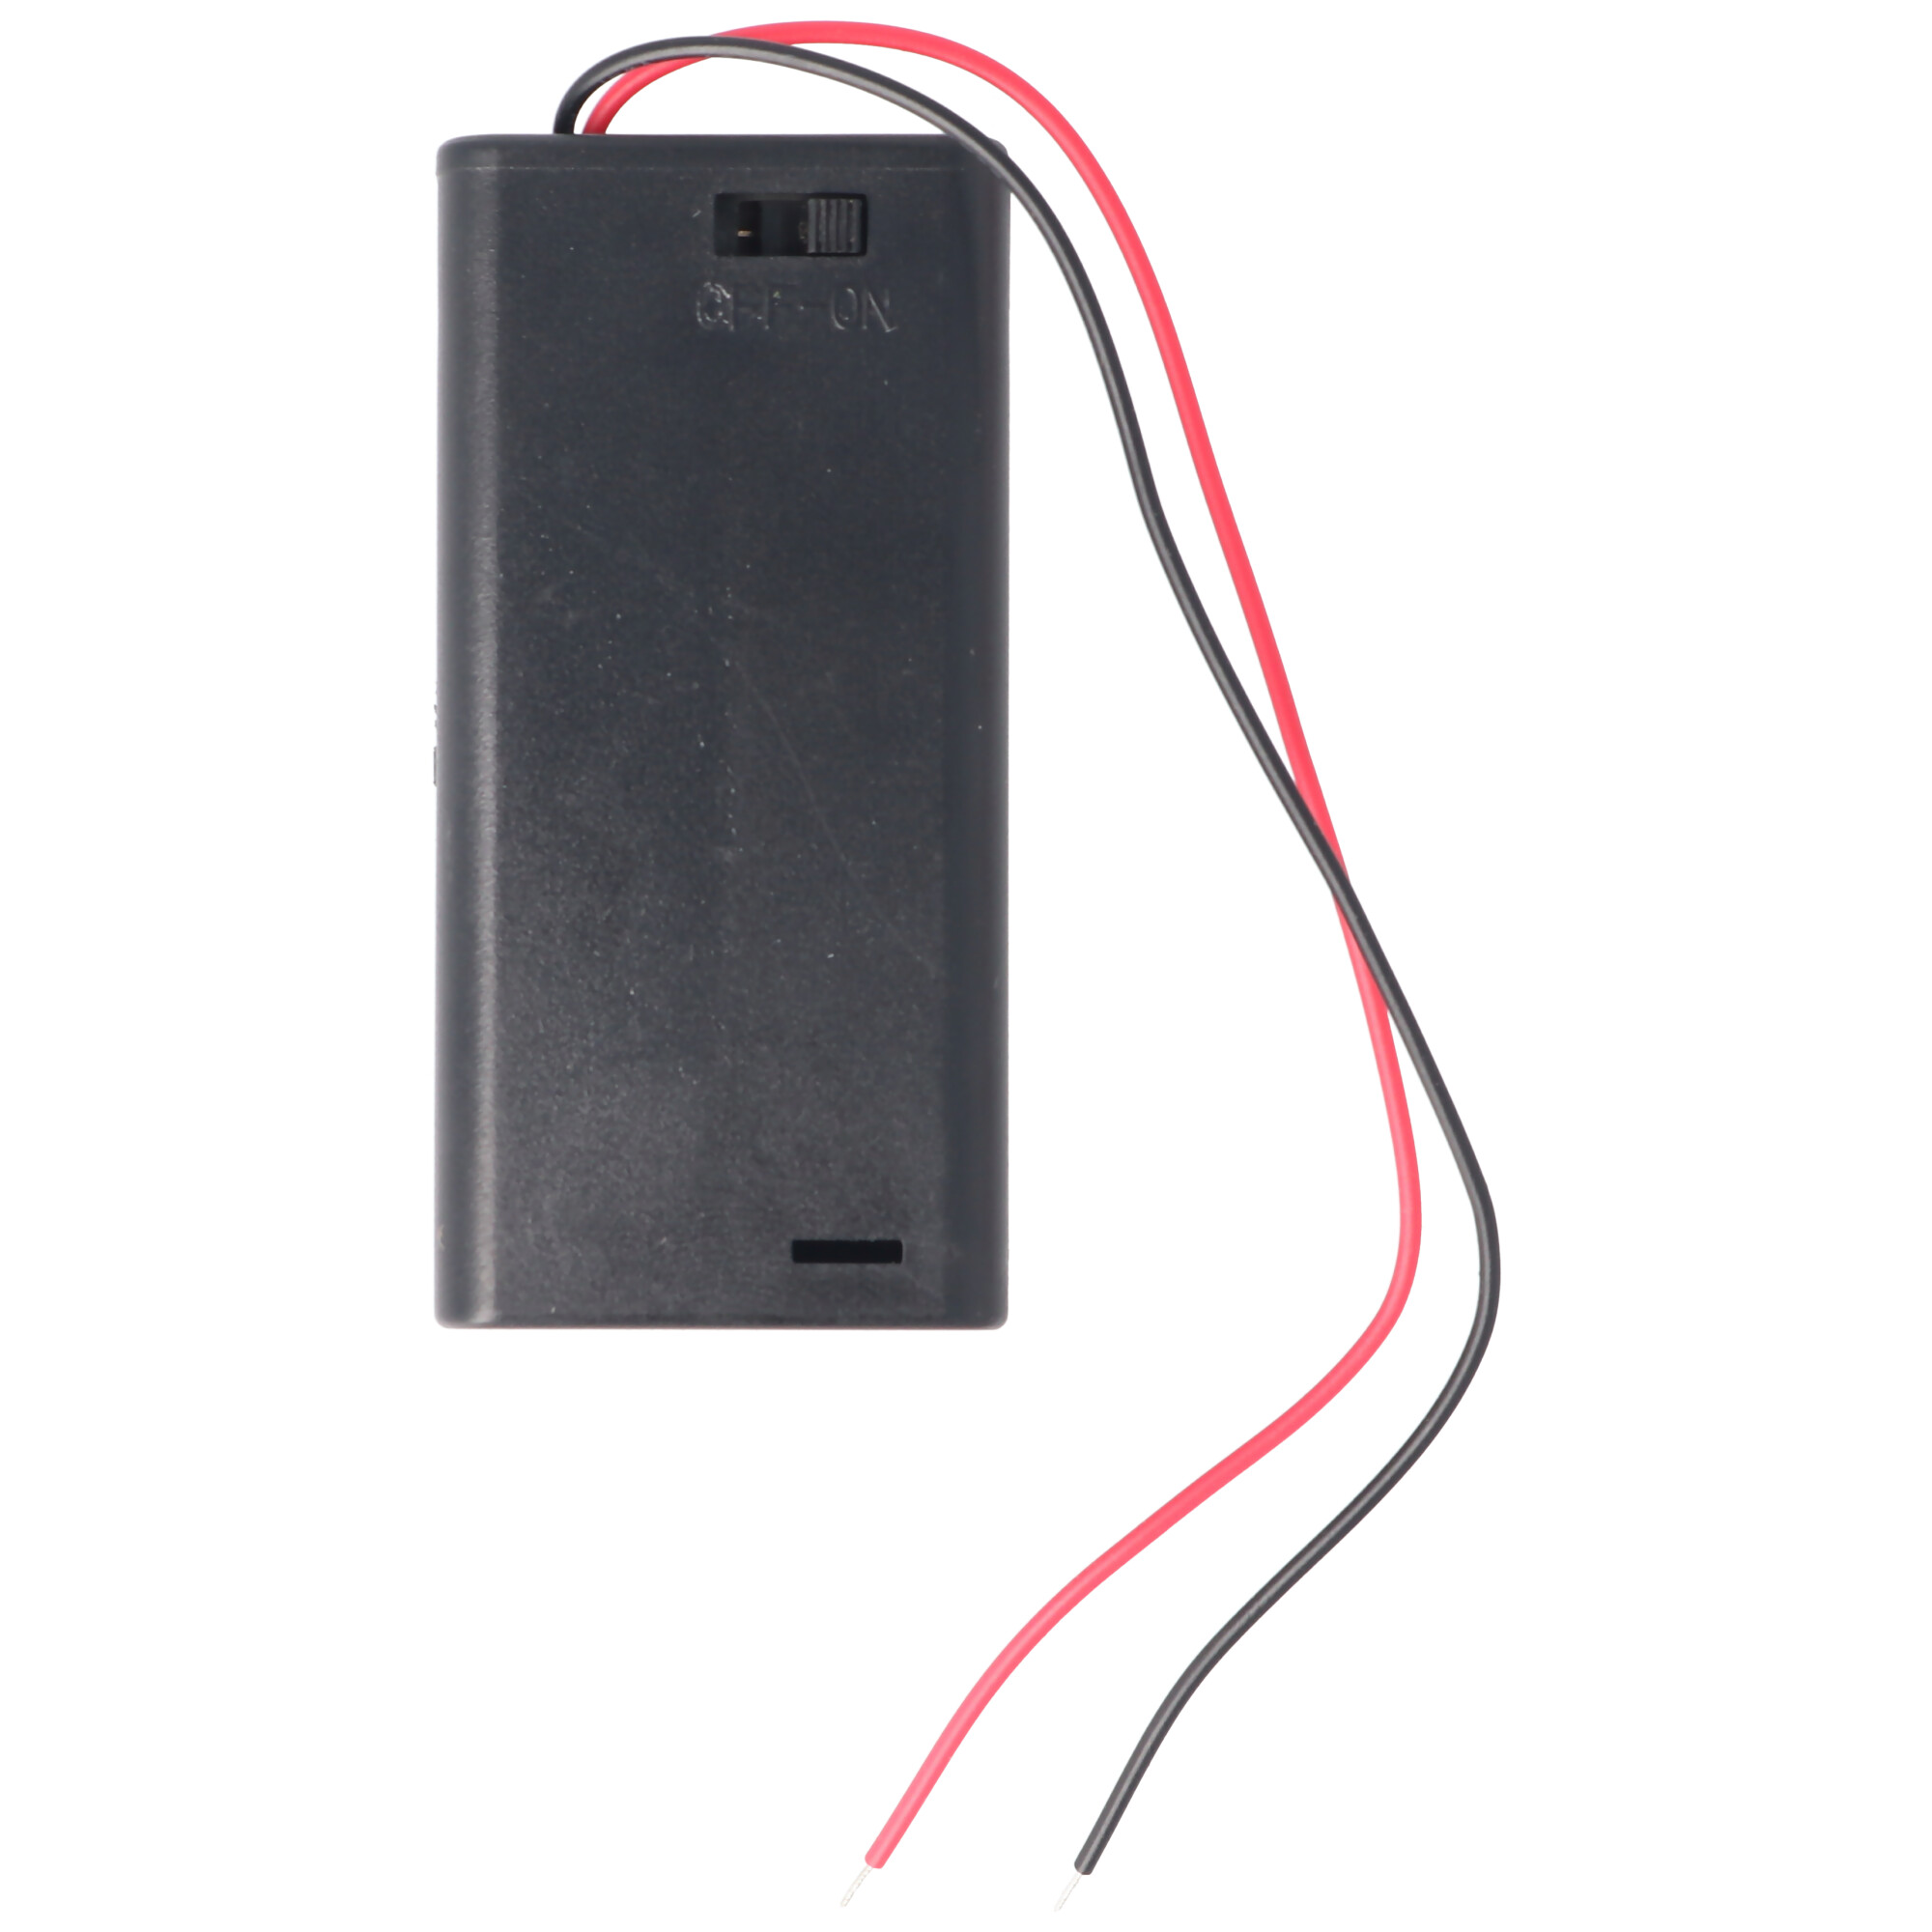 Batteriehalter für 2x Mignon AA LR6 Batterie mit An/Aus Schalter